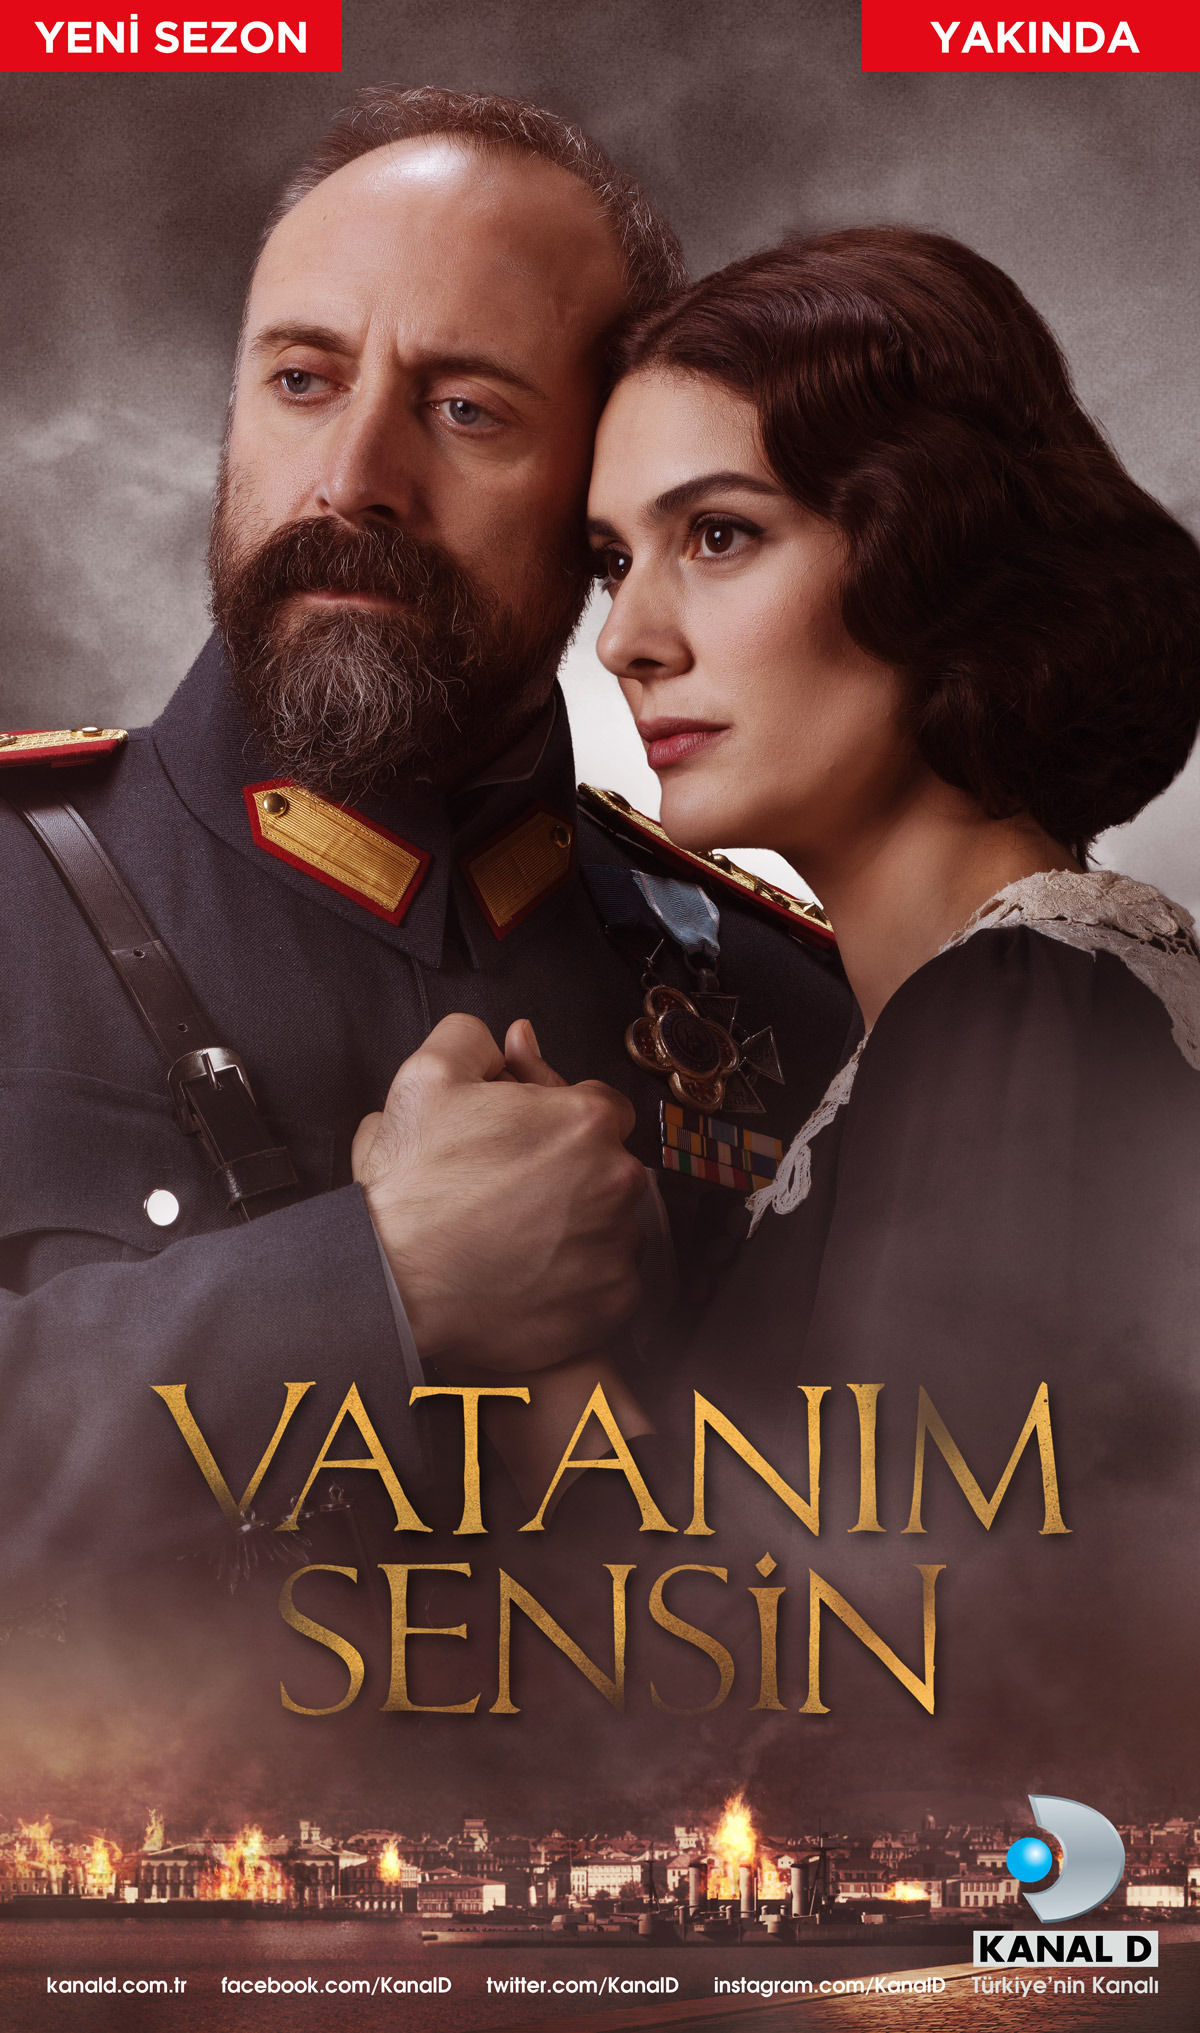 Mega Sized TV Poster Image for Vatanim Sensin (#2 of 3)